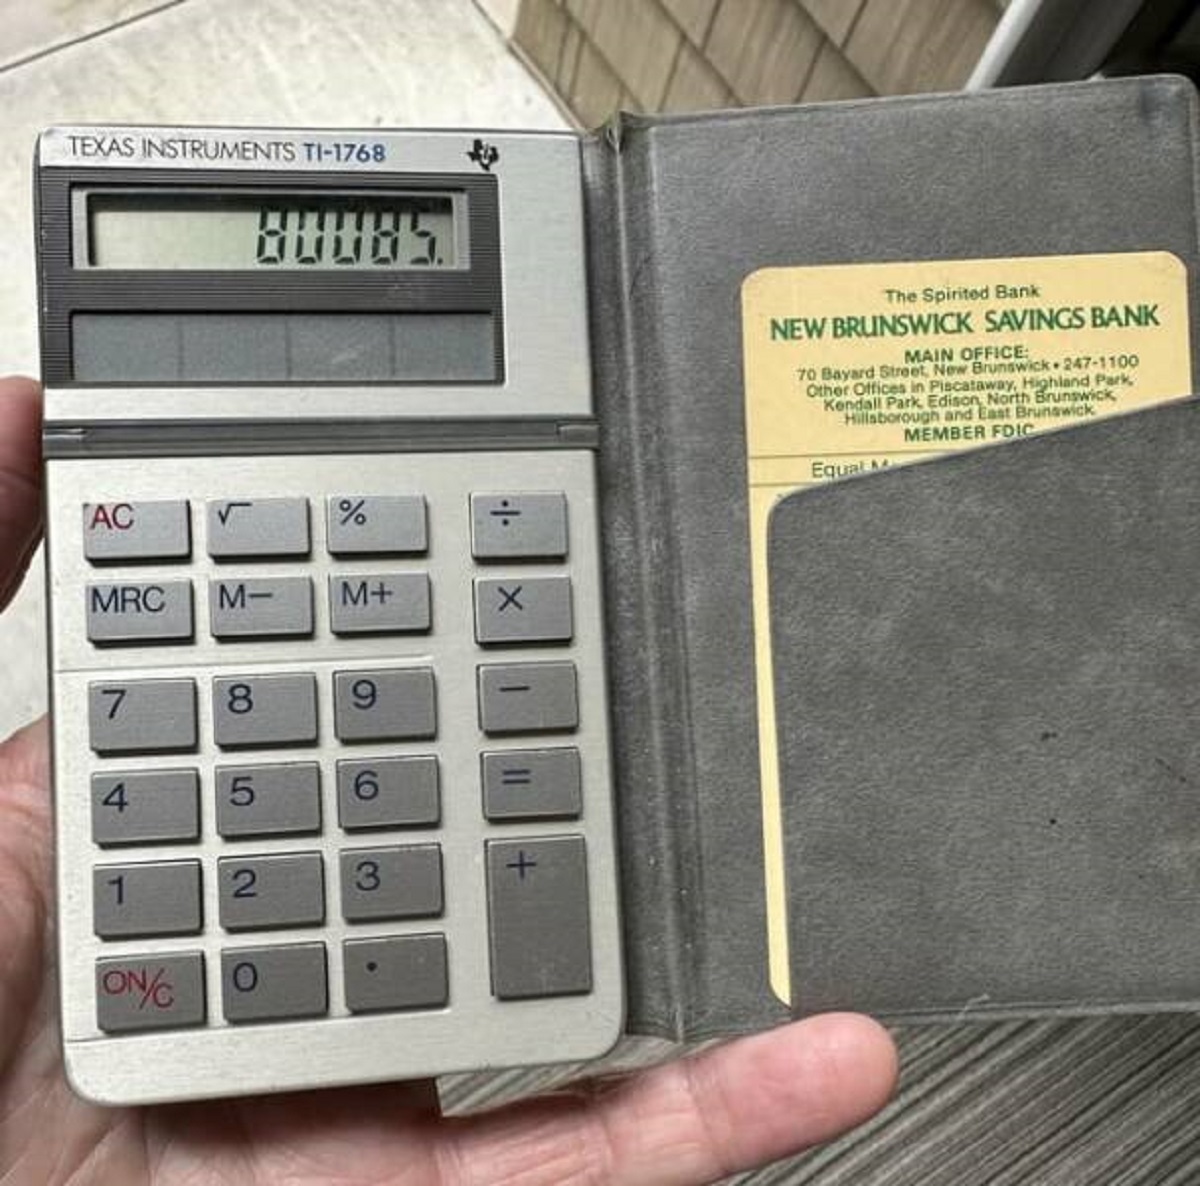 "Solar calculator from 1986 still works"